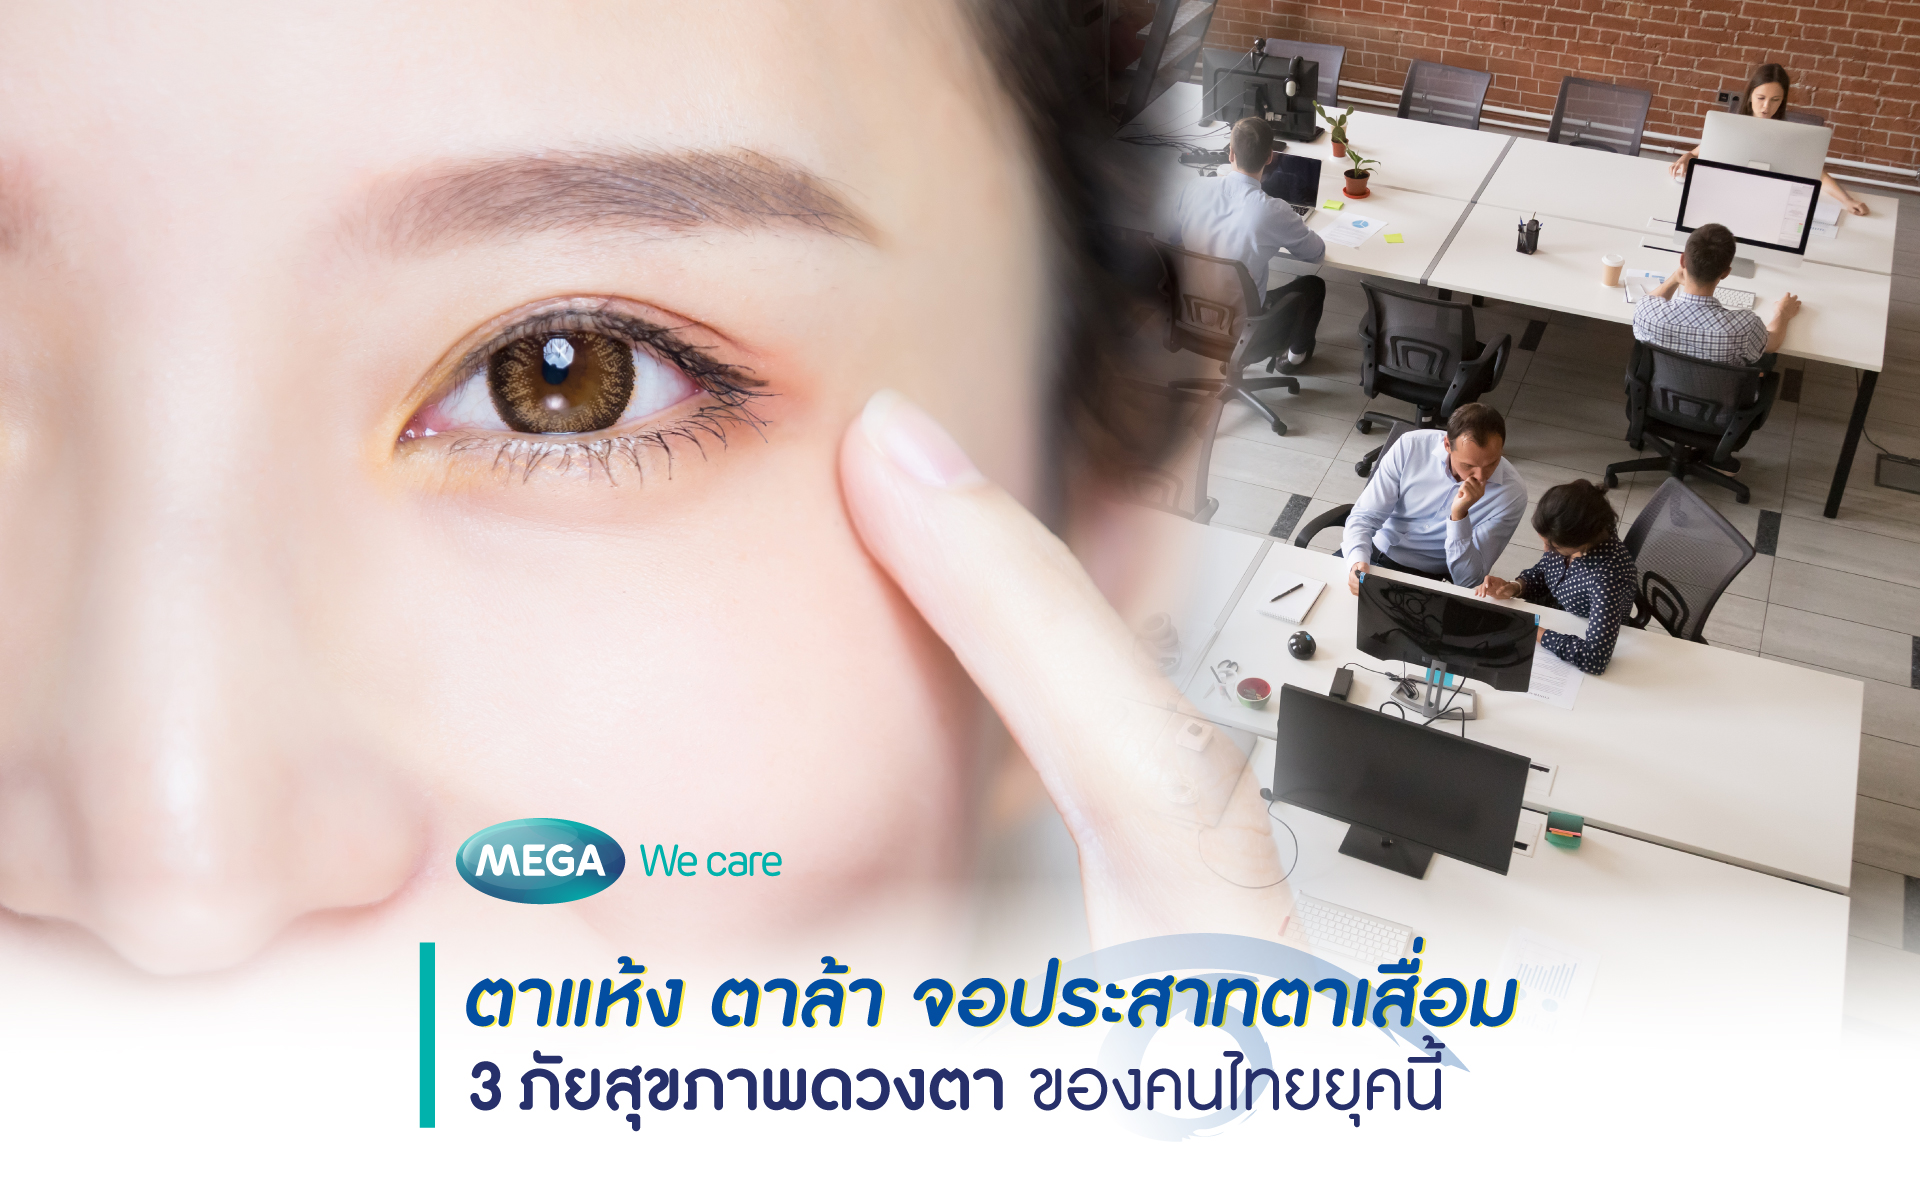 ตาแห้ง ตาล้า จอประสาทตาเสื่อม 3 ภัยสุขภาพดวงตาของคนไทยยุคนี้ 